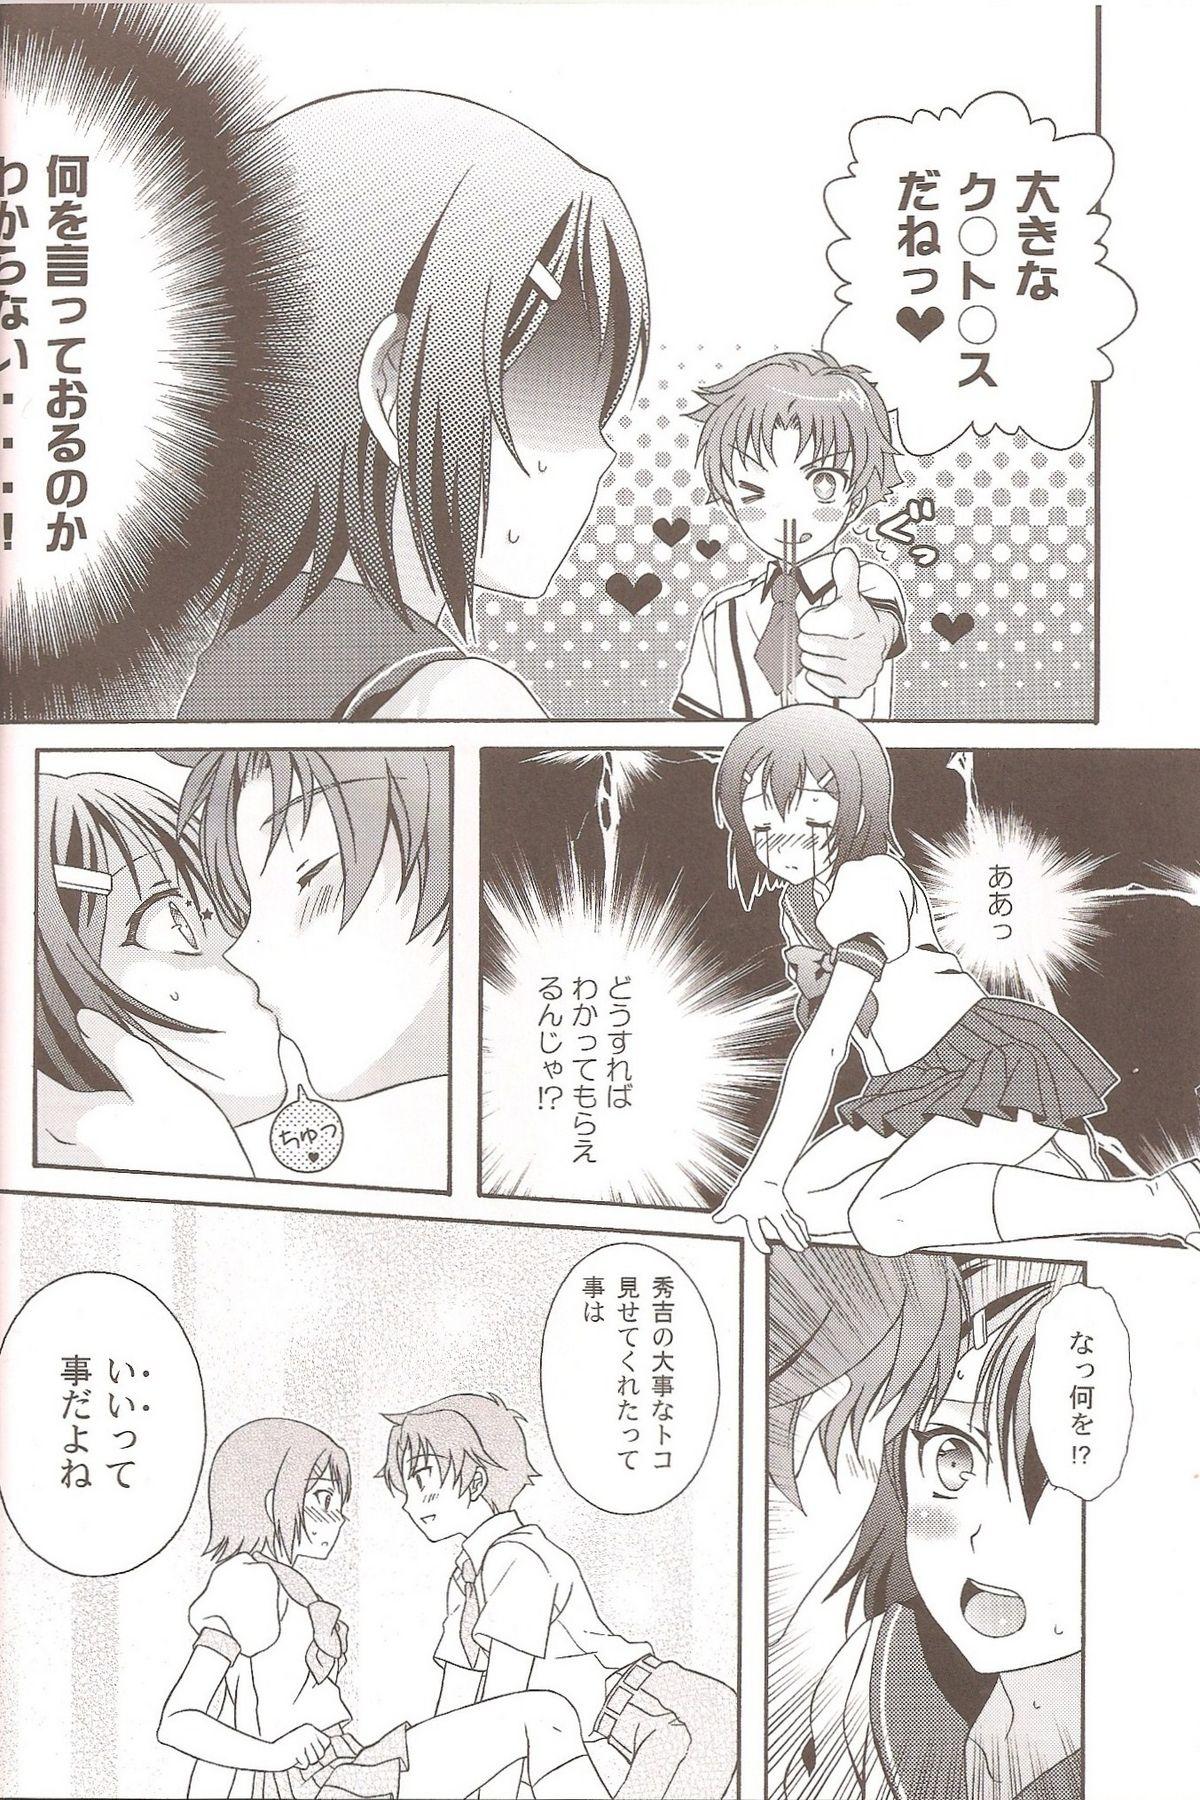 Pmv Otoko no Ko no Hon - Baka to test to shoukanjuu Minami ke Shugo chara Girlnextdoor - Page 5